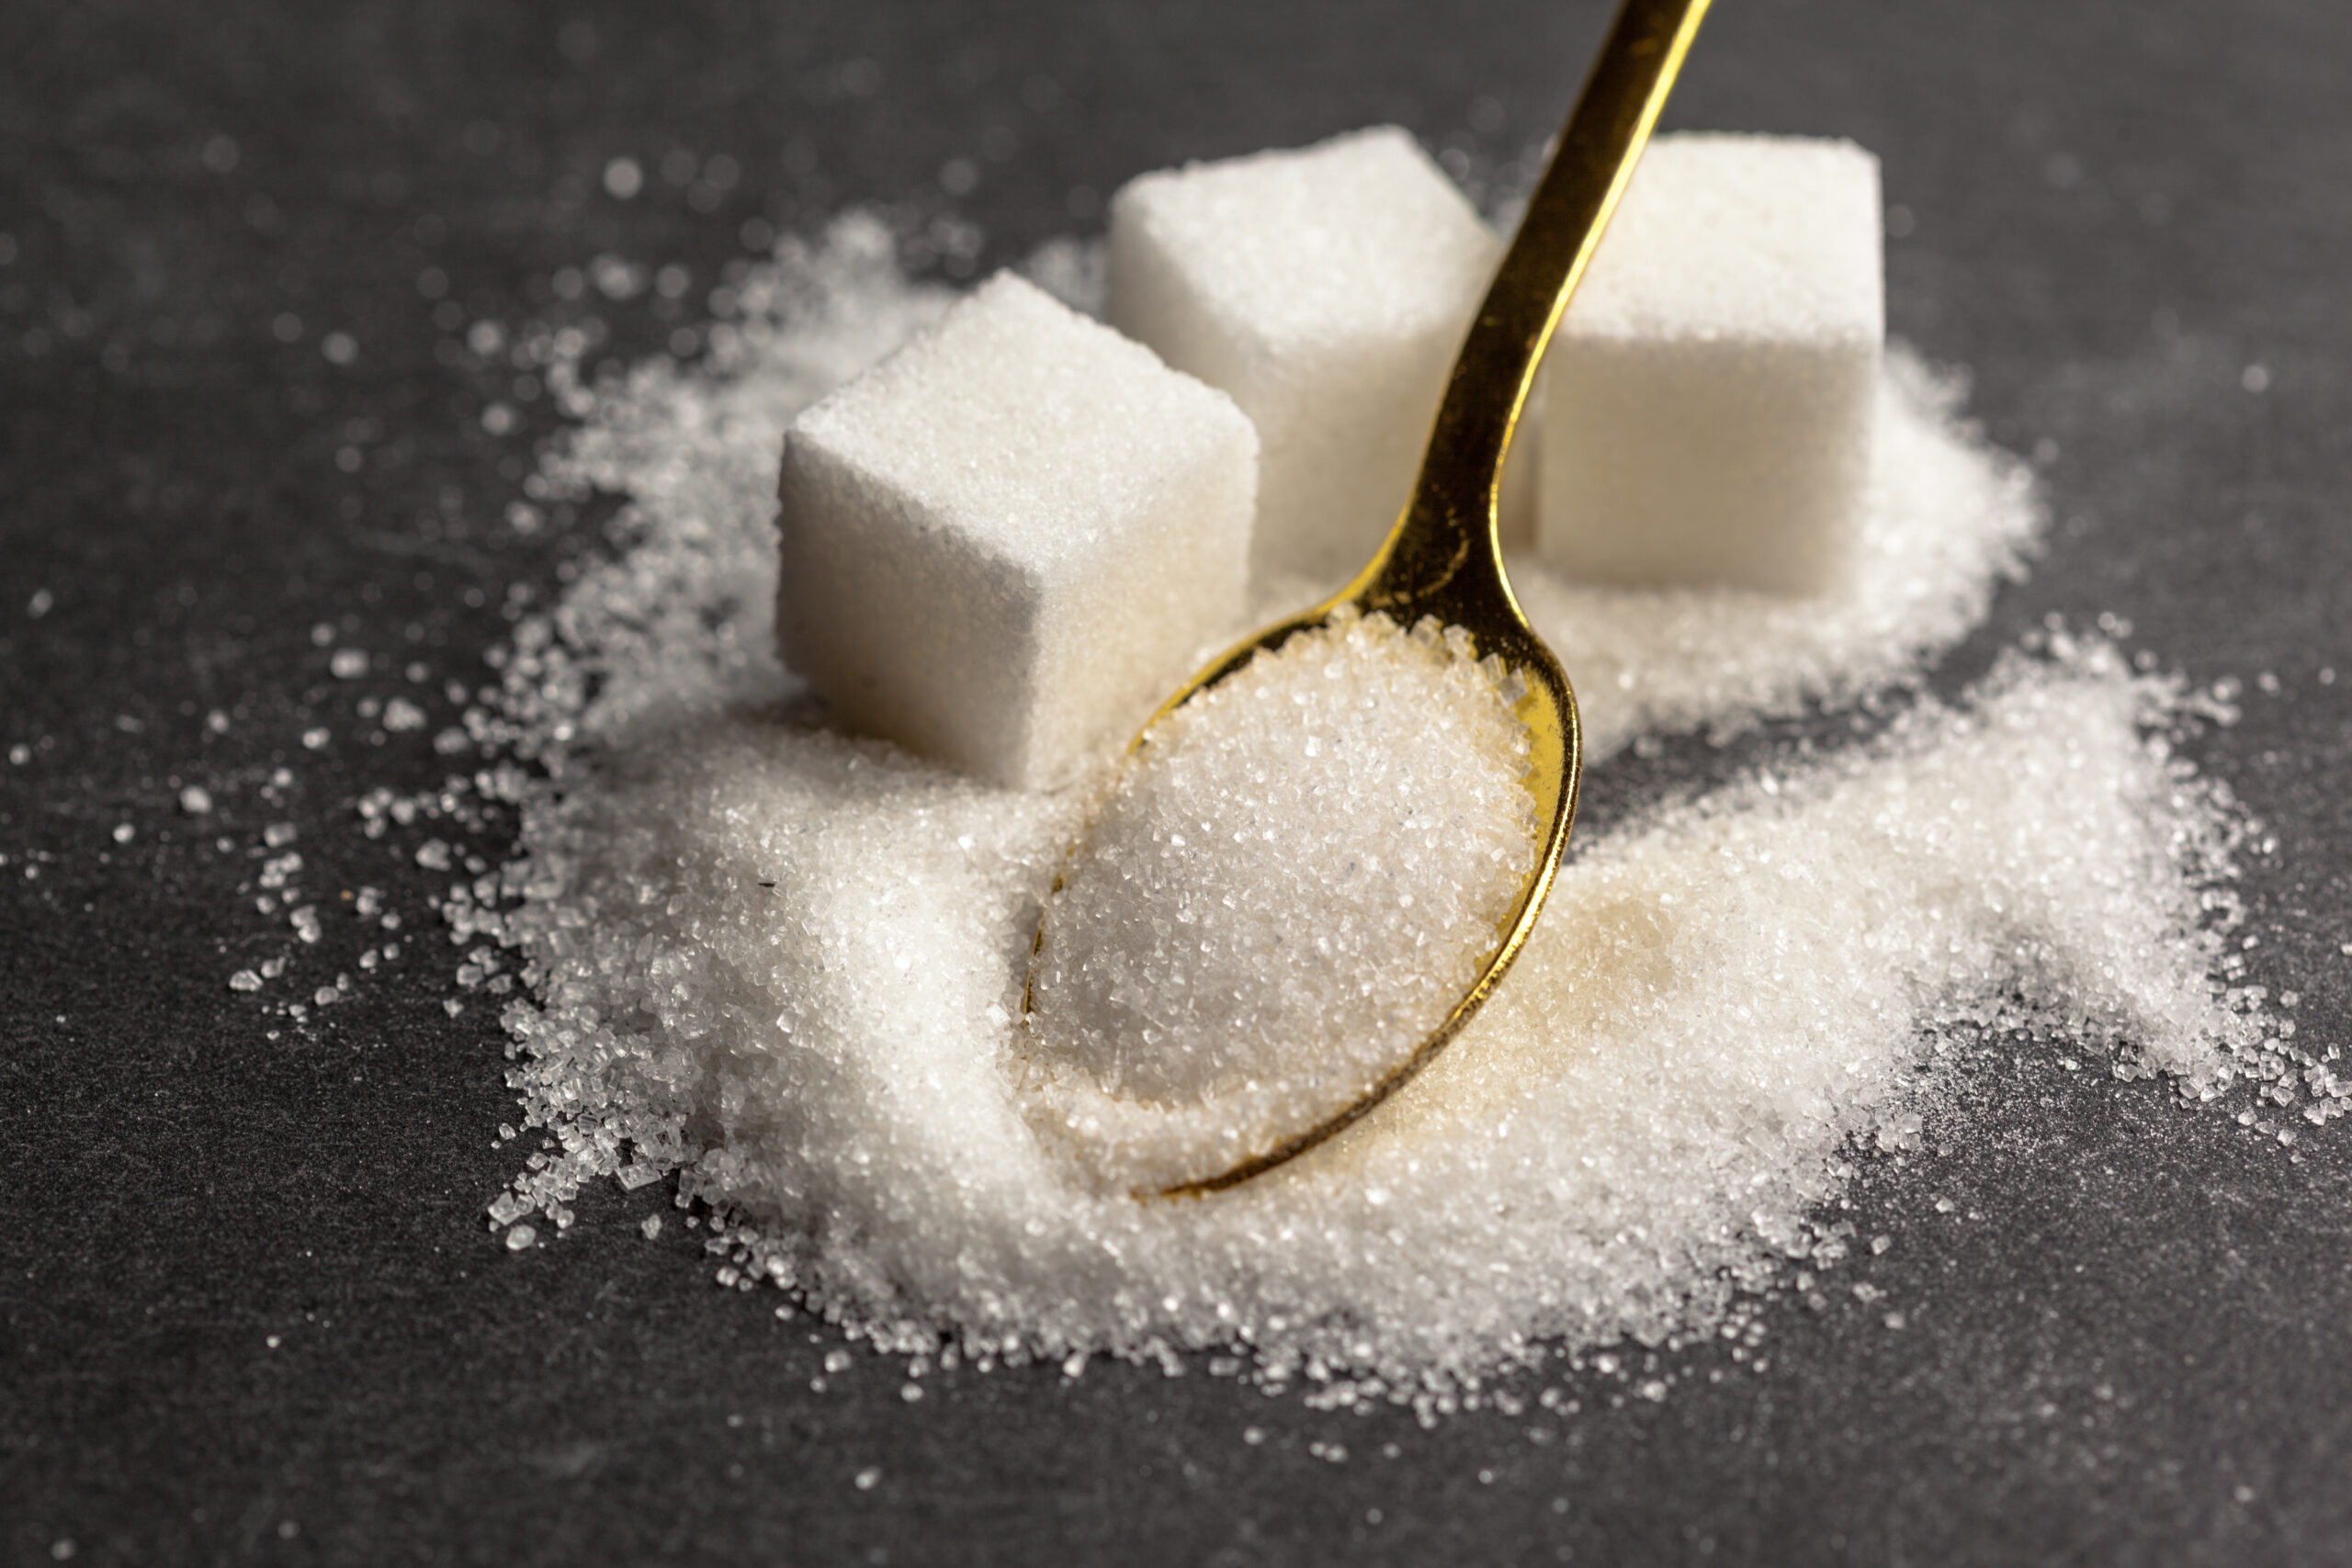 socker gör barn överaktiva falsk myt